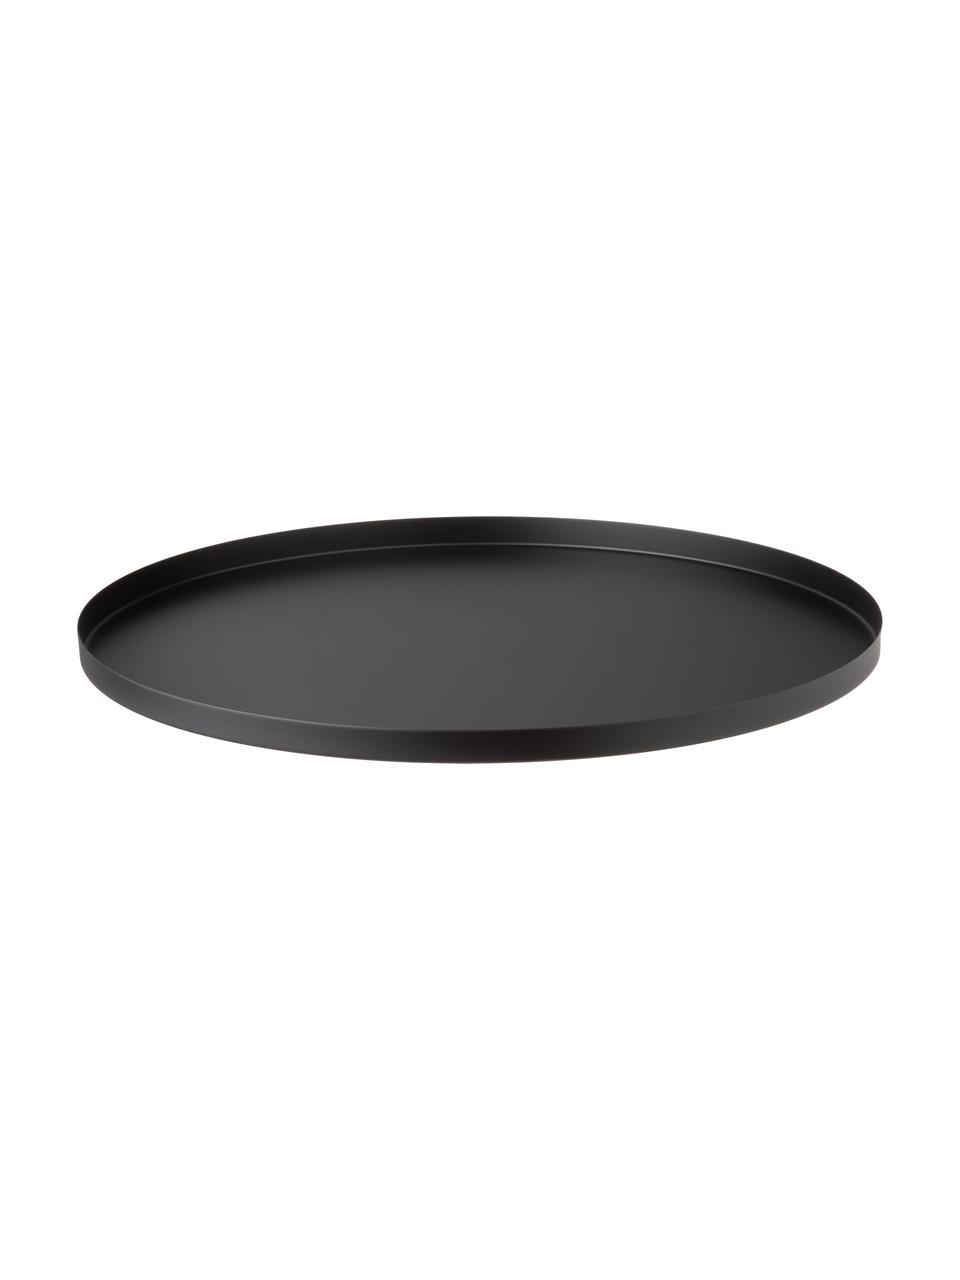 Großes, rundes Deko-Tablett Circle in Schwarz, Edelstahl, pulverbeschichtet, Schwarz, matt, Ø 40 cm